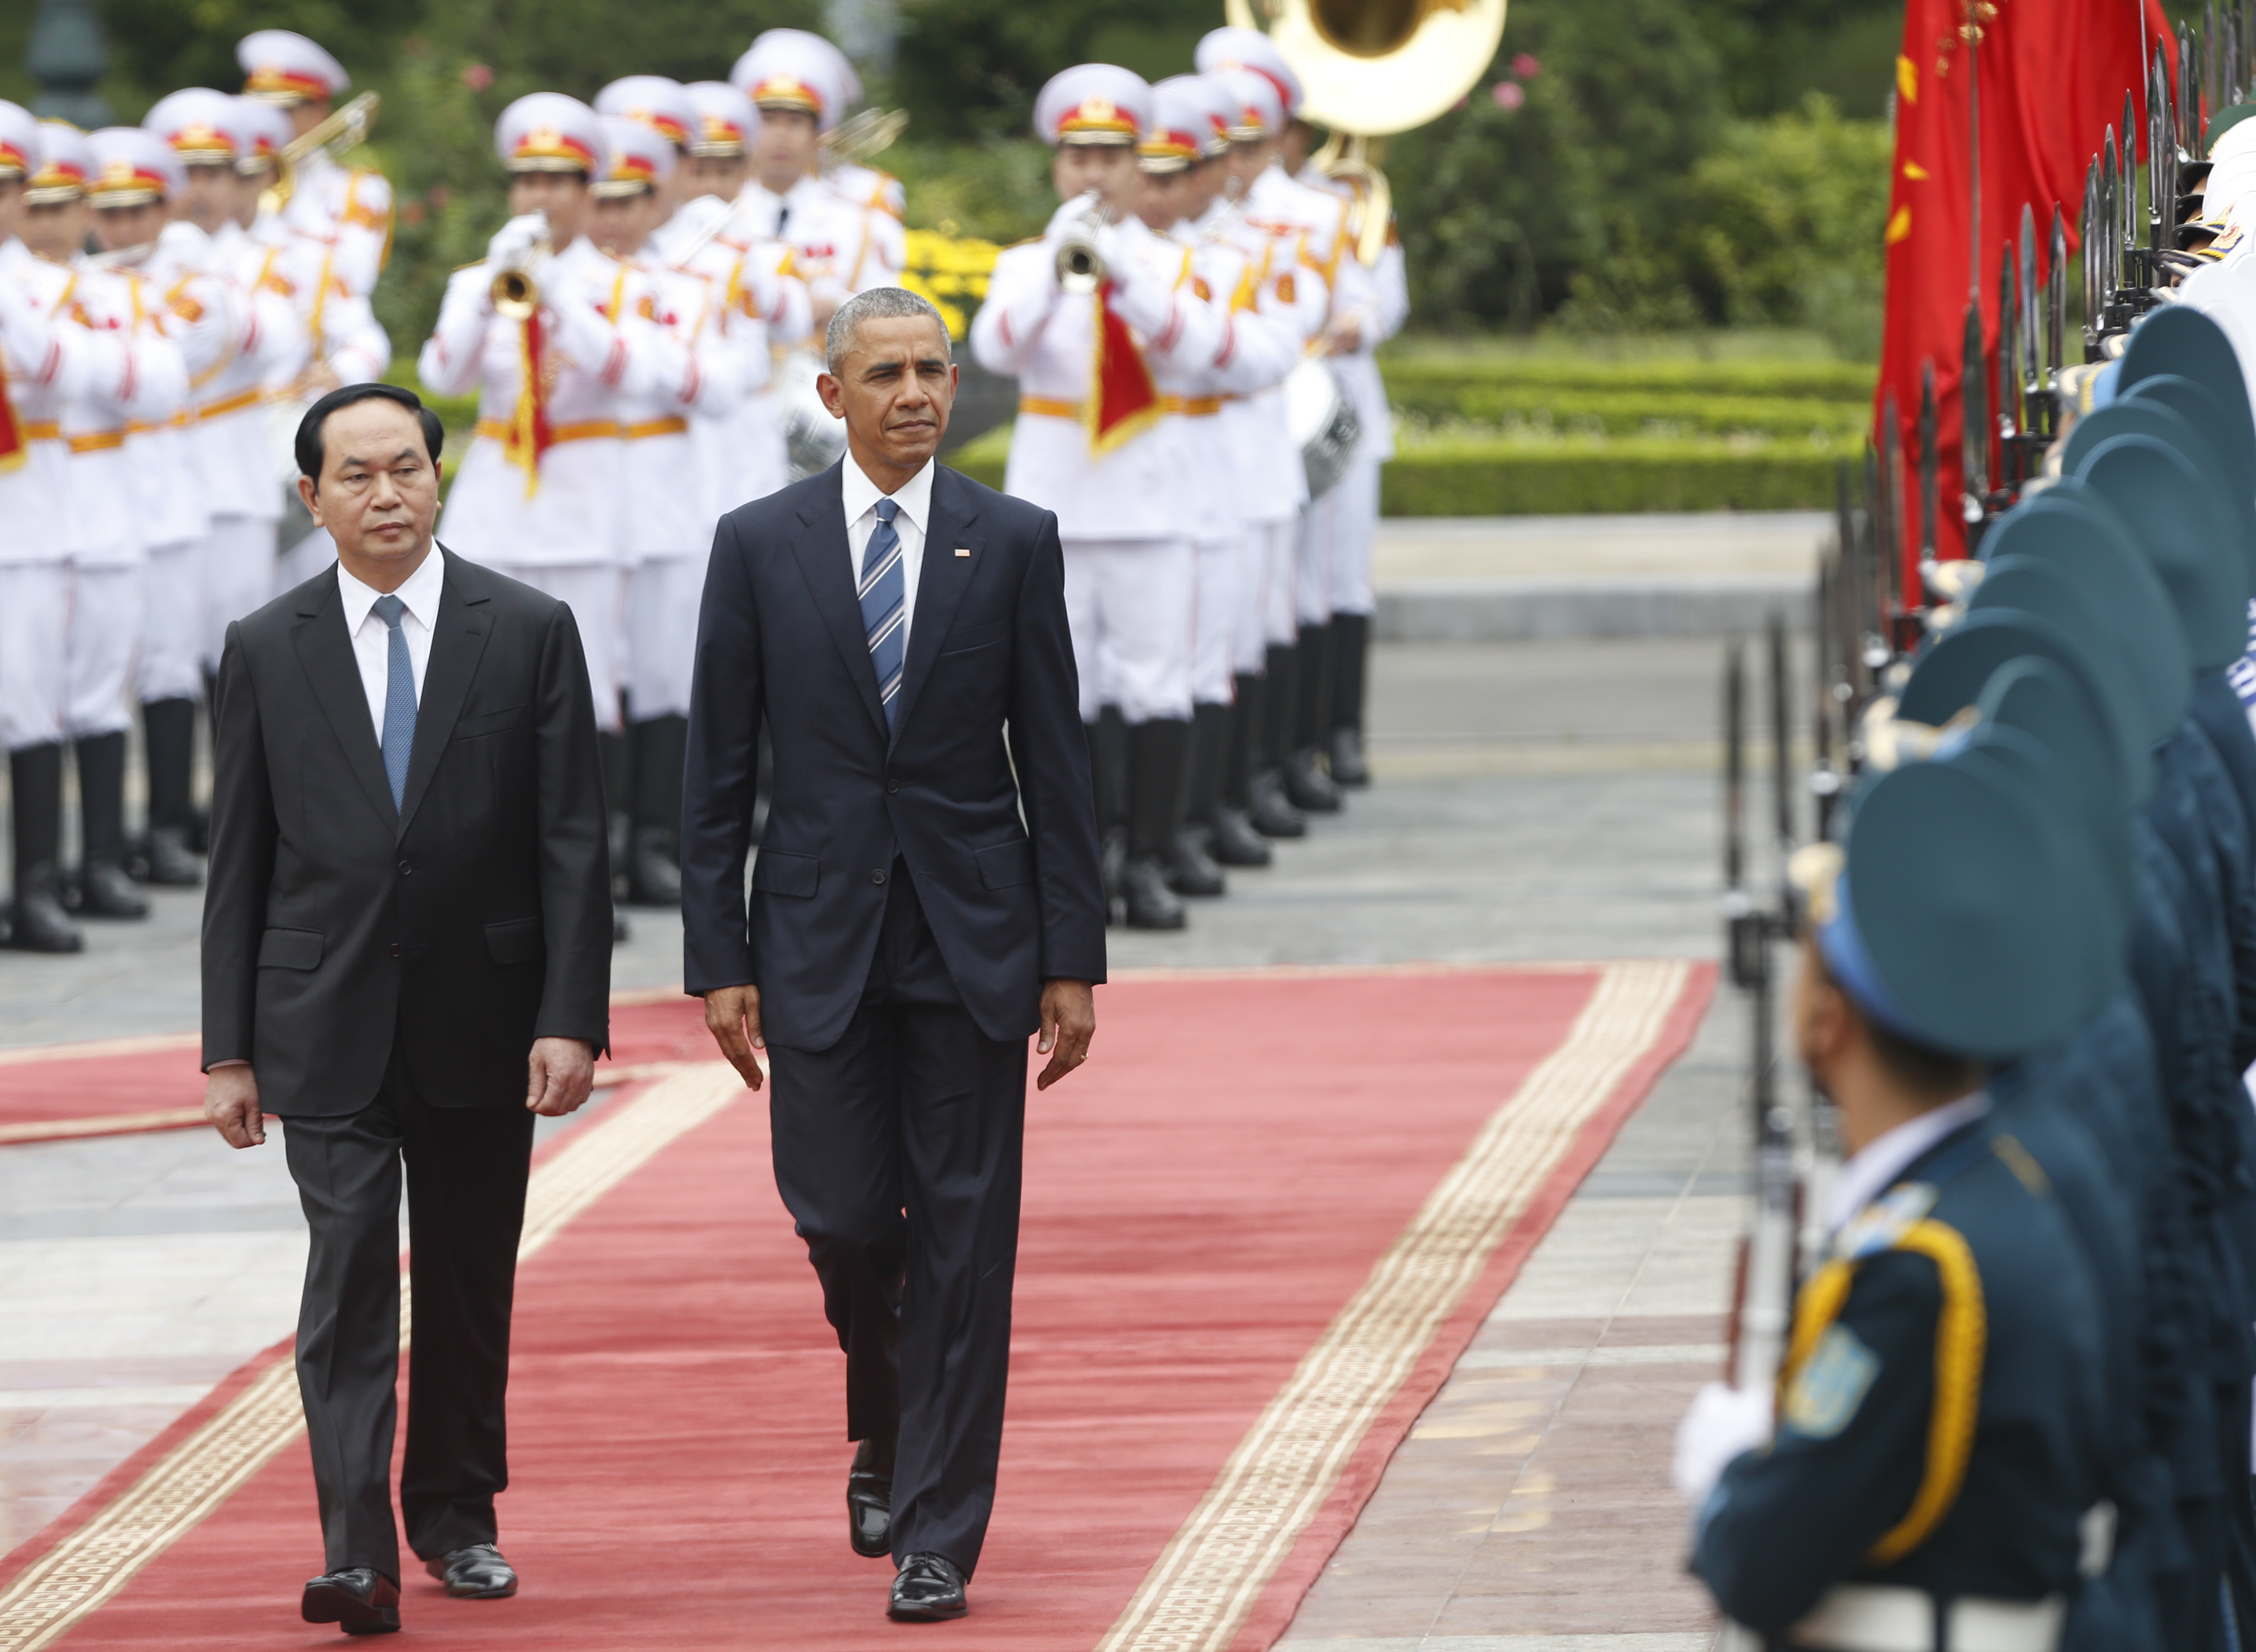 Tổng thống Obama và Chủ tịch nước Trần Đại Quang tại Phủ Chủ tịch sáng 23-5-2016. Ảnh: Getty Images